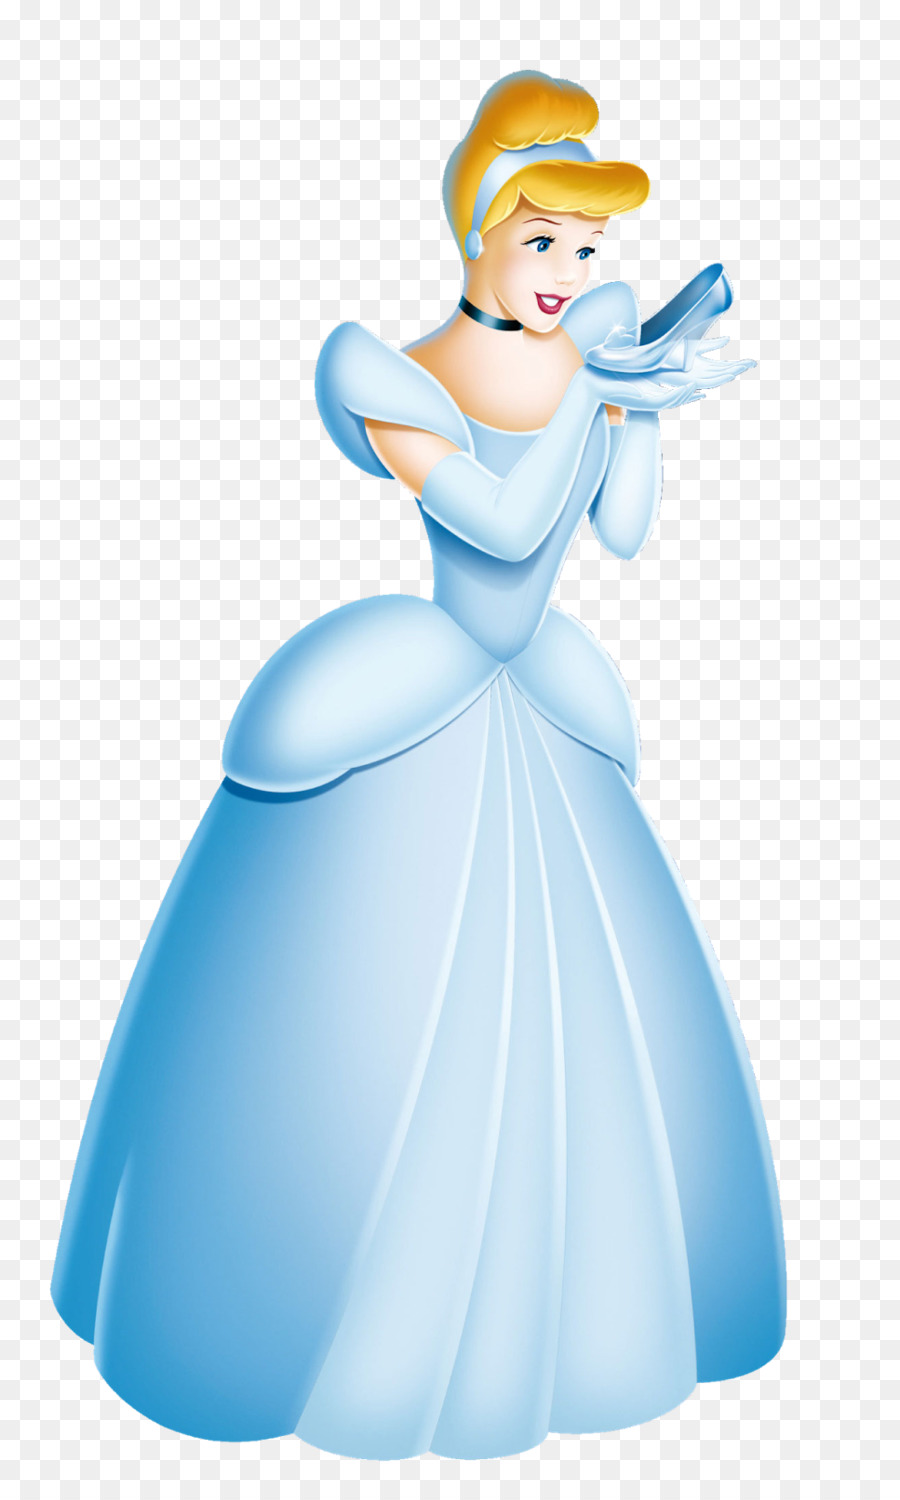 Cinderella Fairy Godmother The Walt Disney Company Disney Princess Clip art - Enero Cliparts png download - 967*1600 - Free Transparent Cinderella png Download.